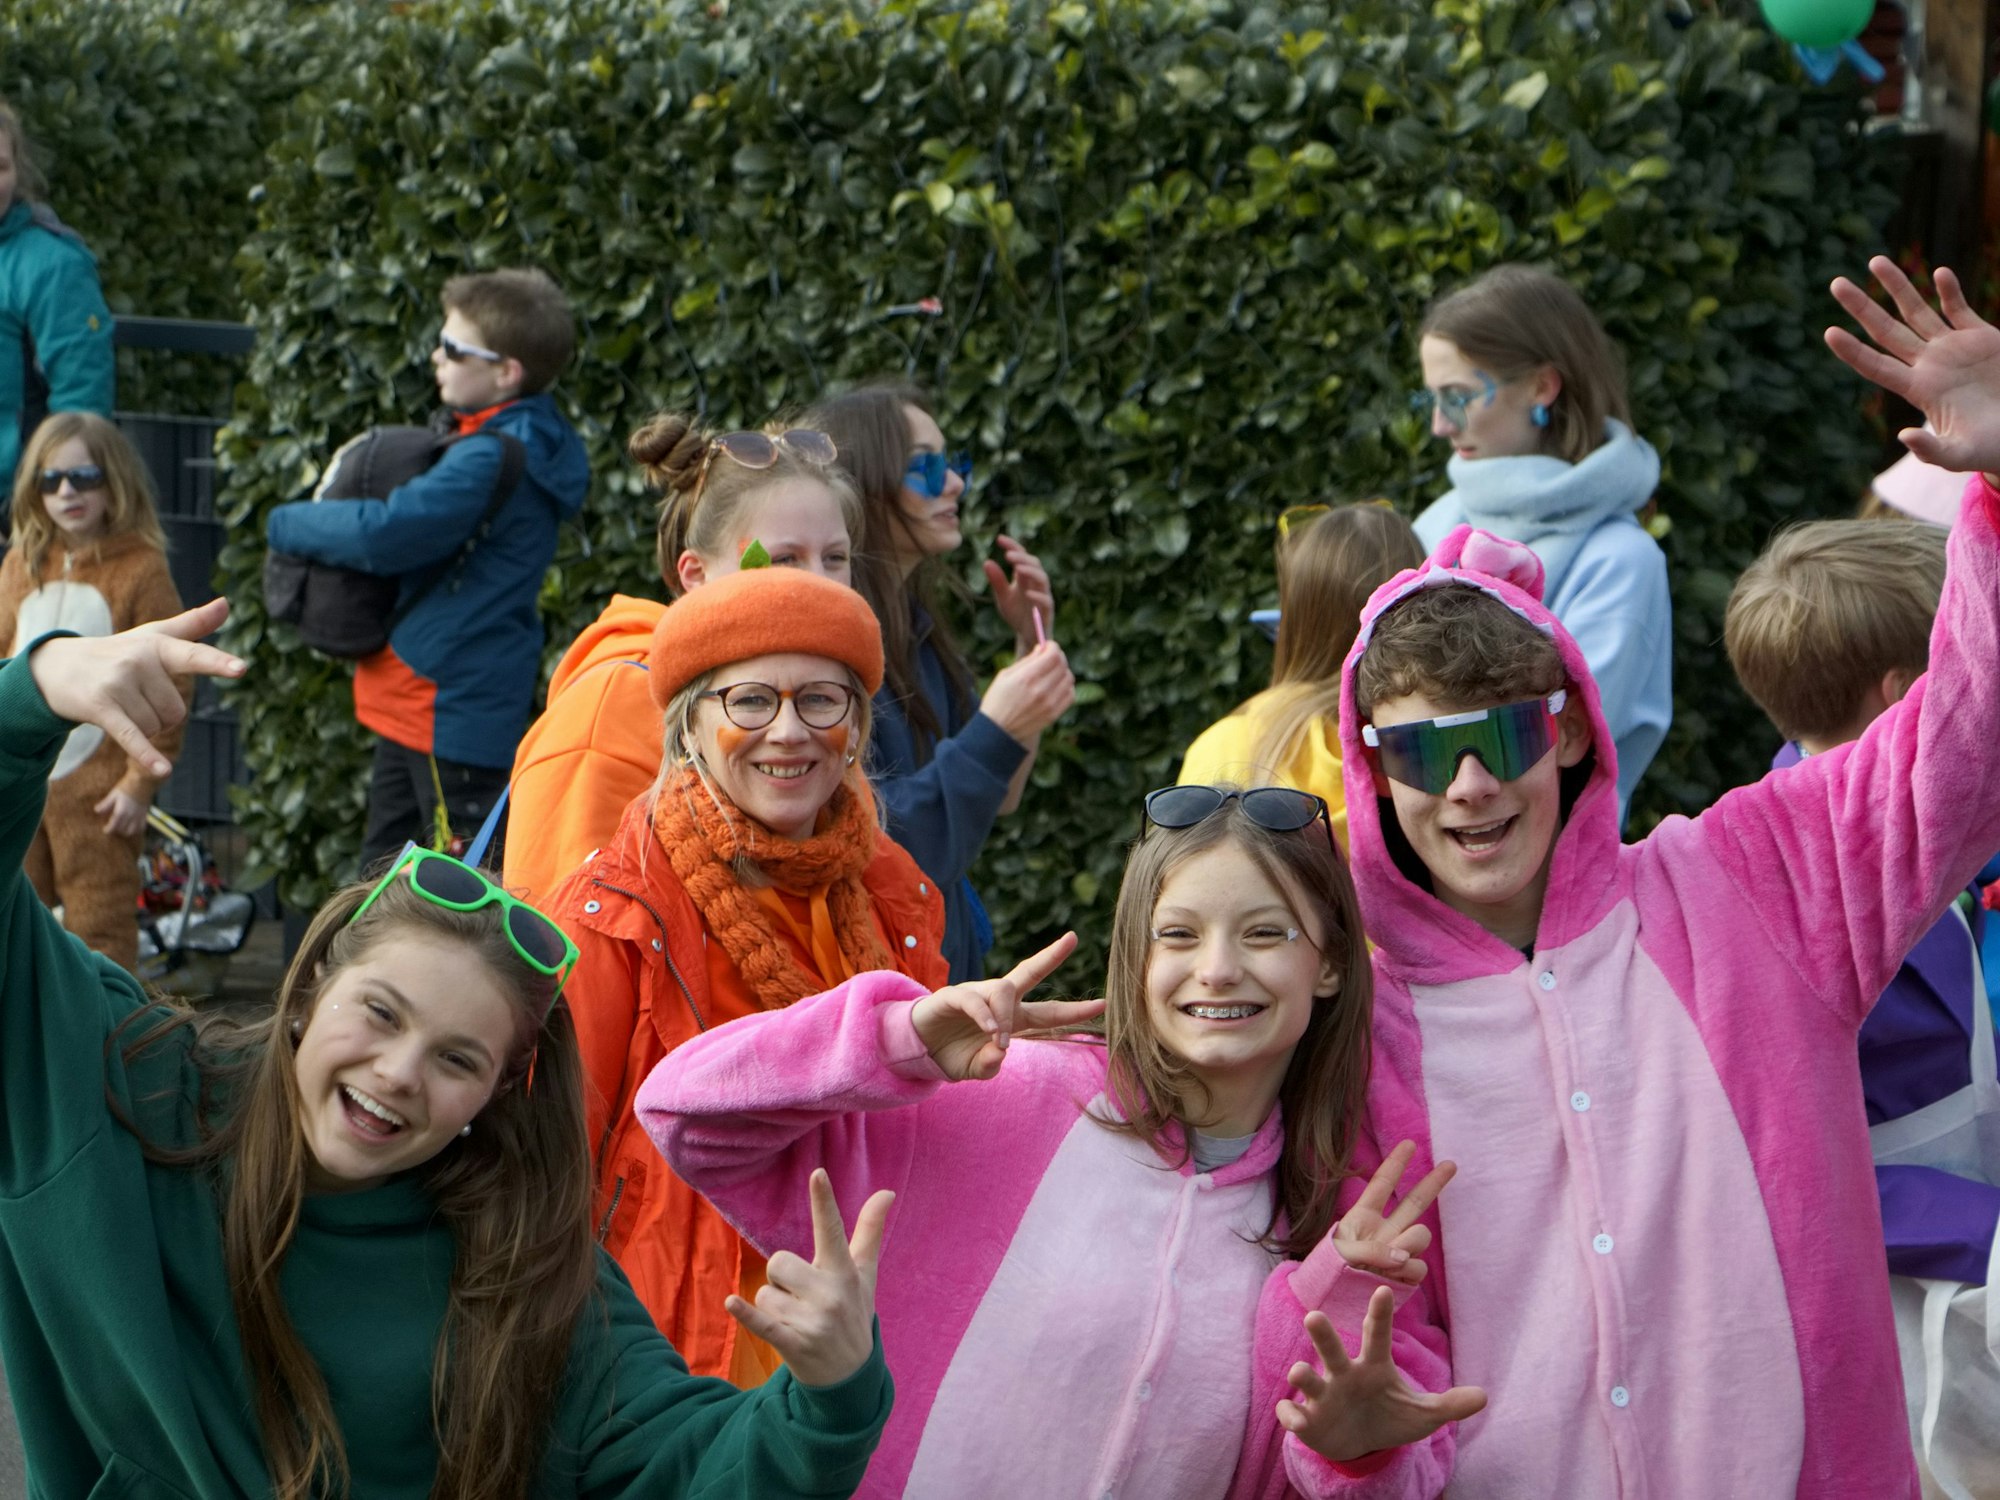 In Harzheim ist auch die Jugend voll dabei, wenn es um Karneval geht. Unter dem Motto „Die Welt ist bunt“ haben sich diese Jecken in herrlich farbige Kostüme gesteckt.